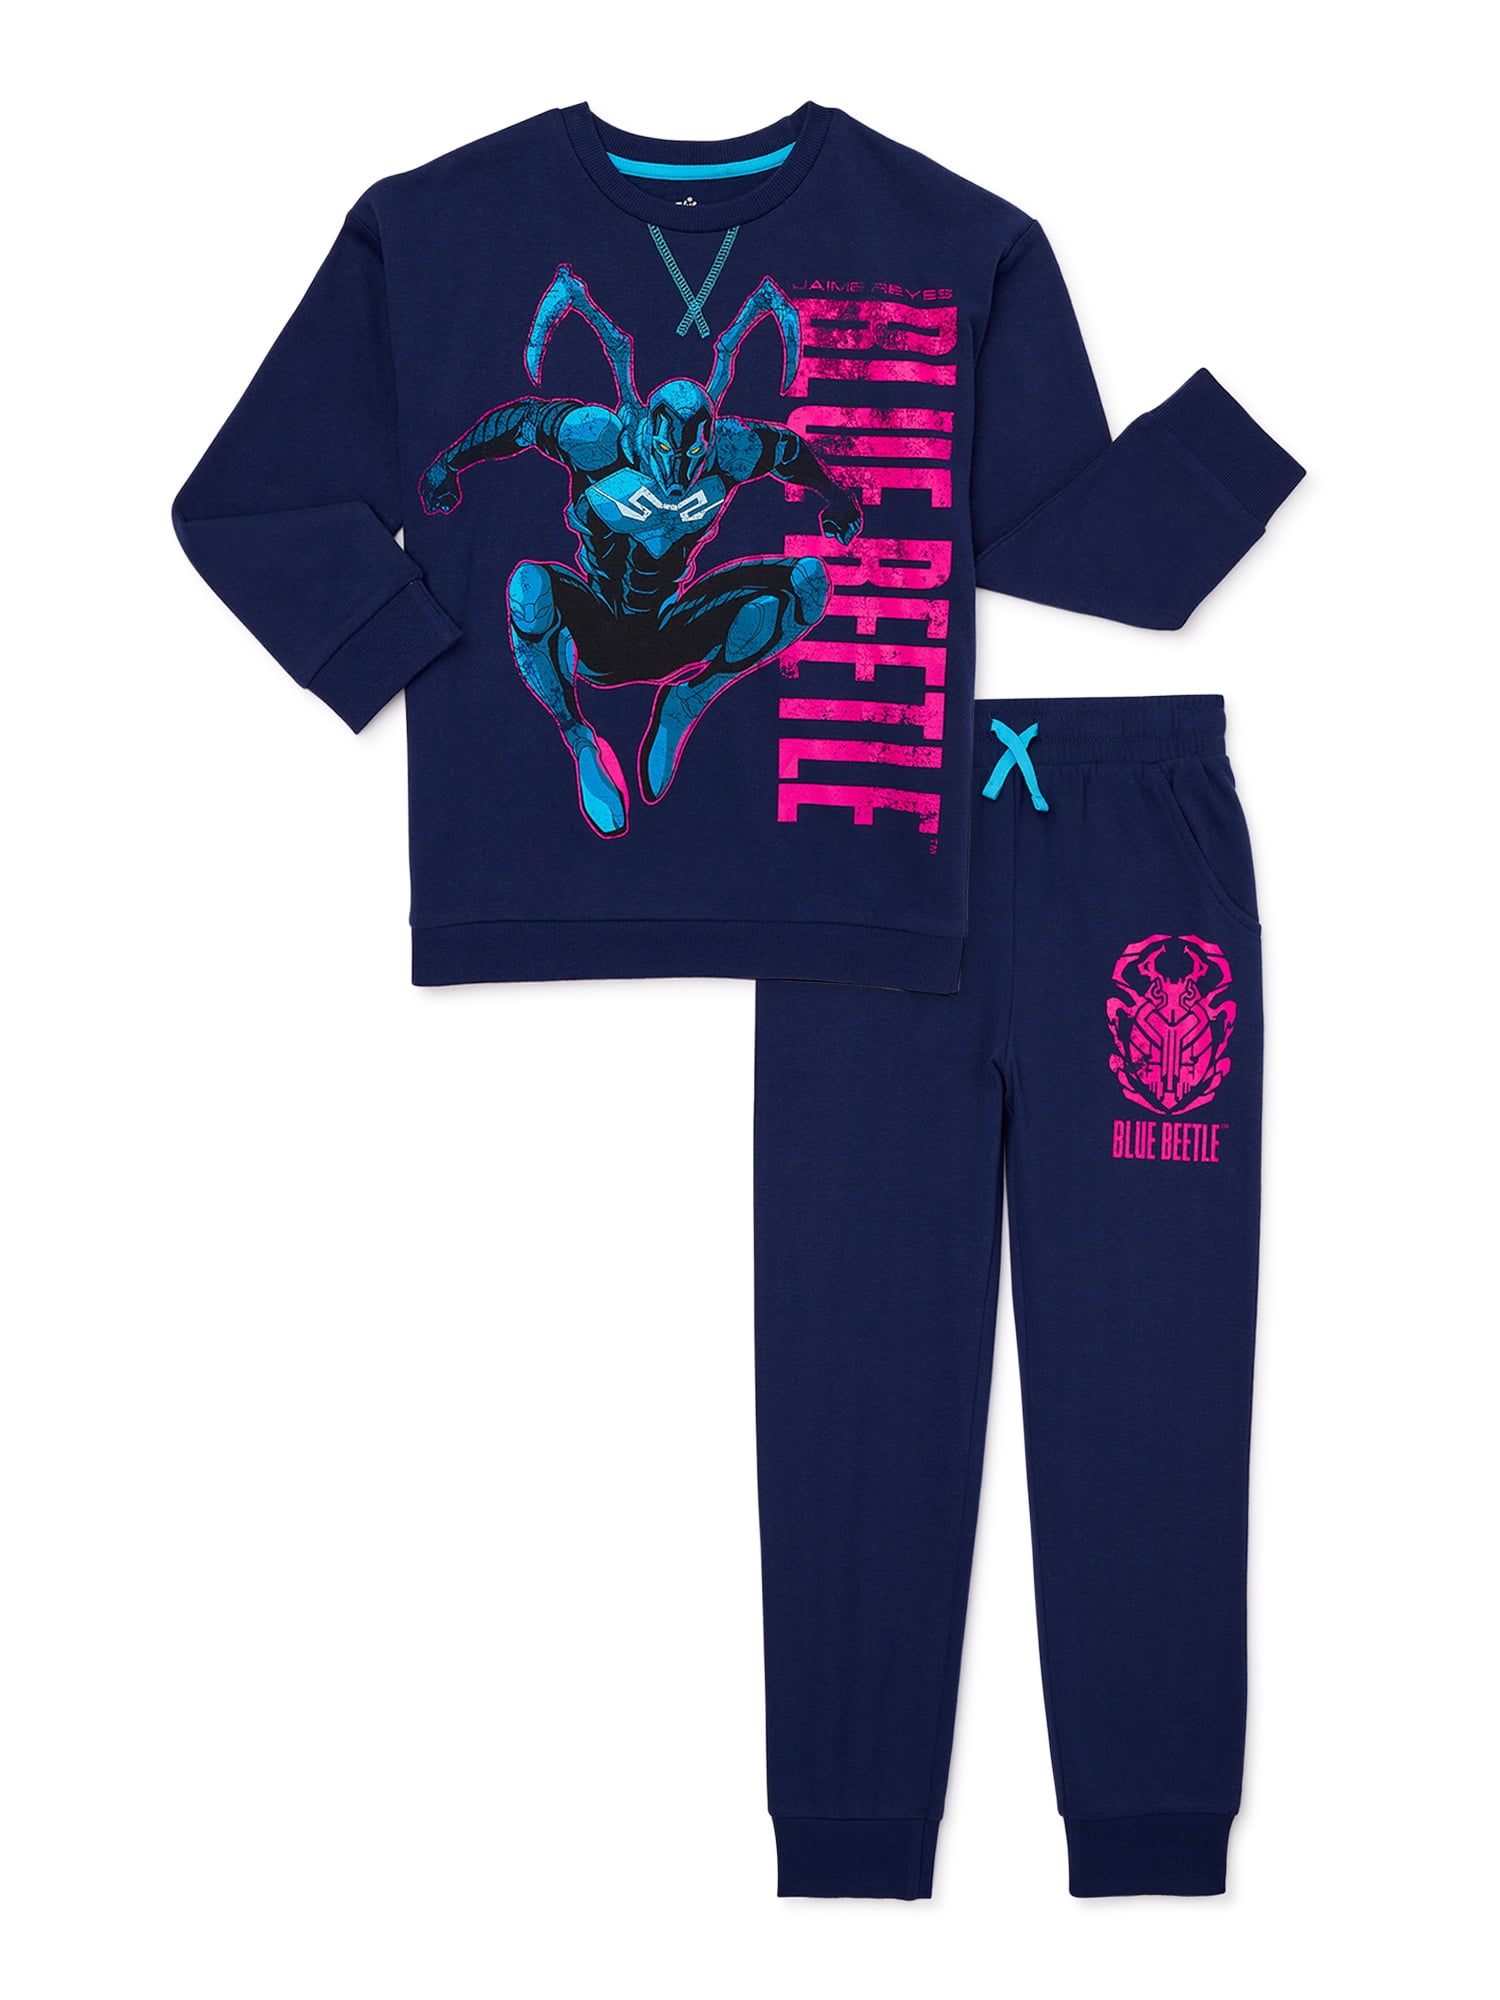 Blue Beetle Boys Fleece Sweatshirt and Joggers Set, 2-Piece, Sizes 4-10